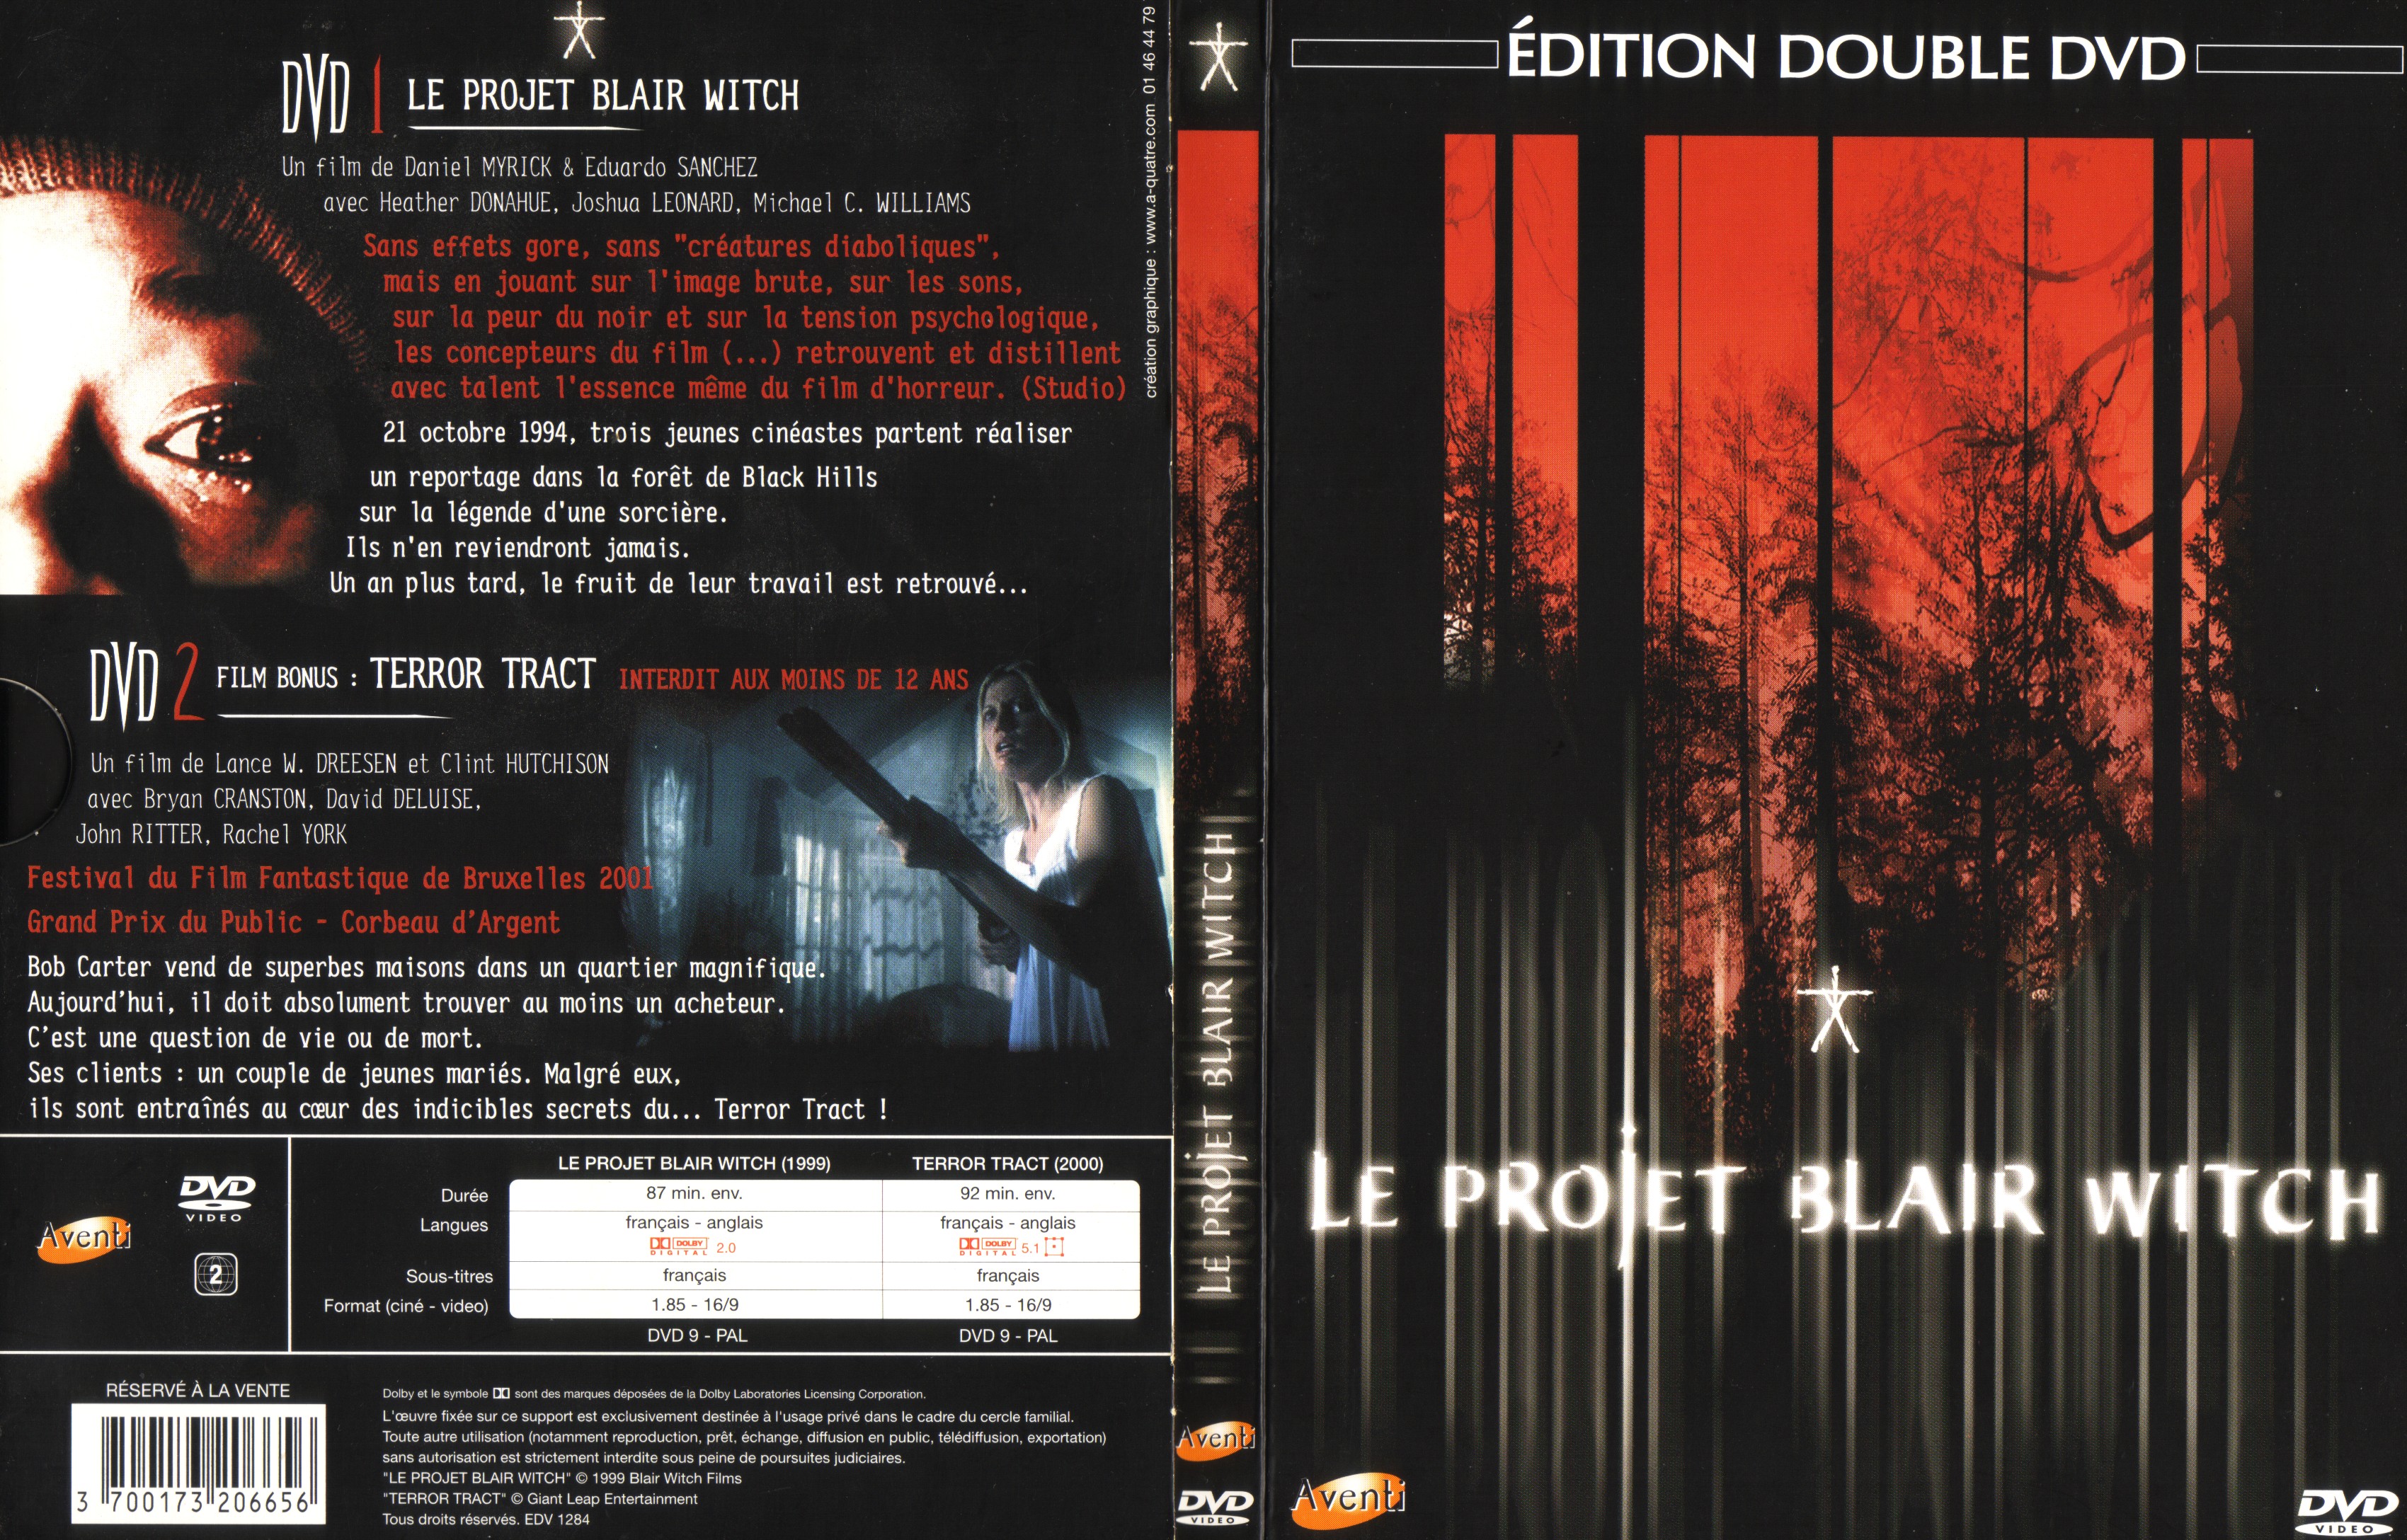 Jaquette DVD Le projet Blair Witch v3